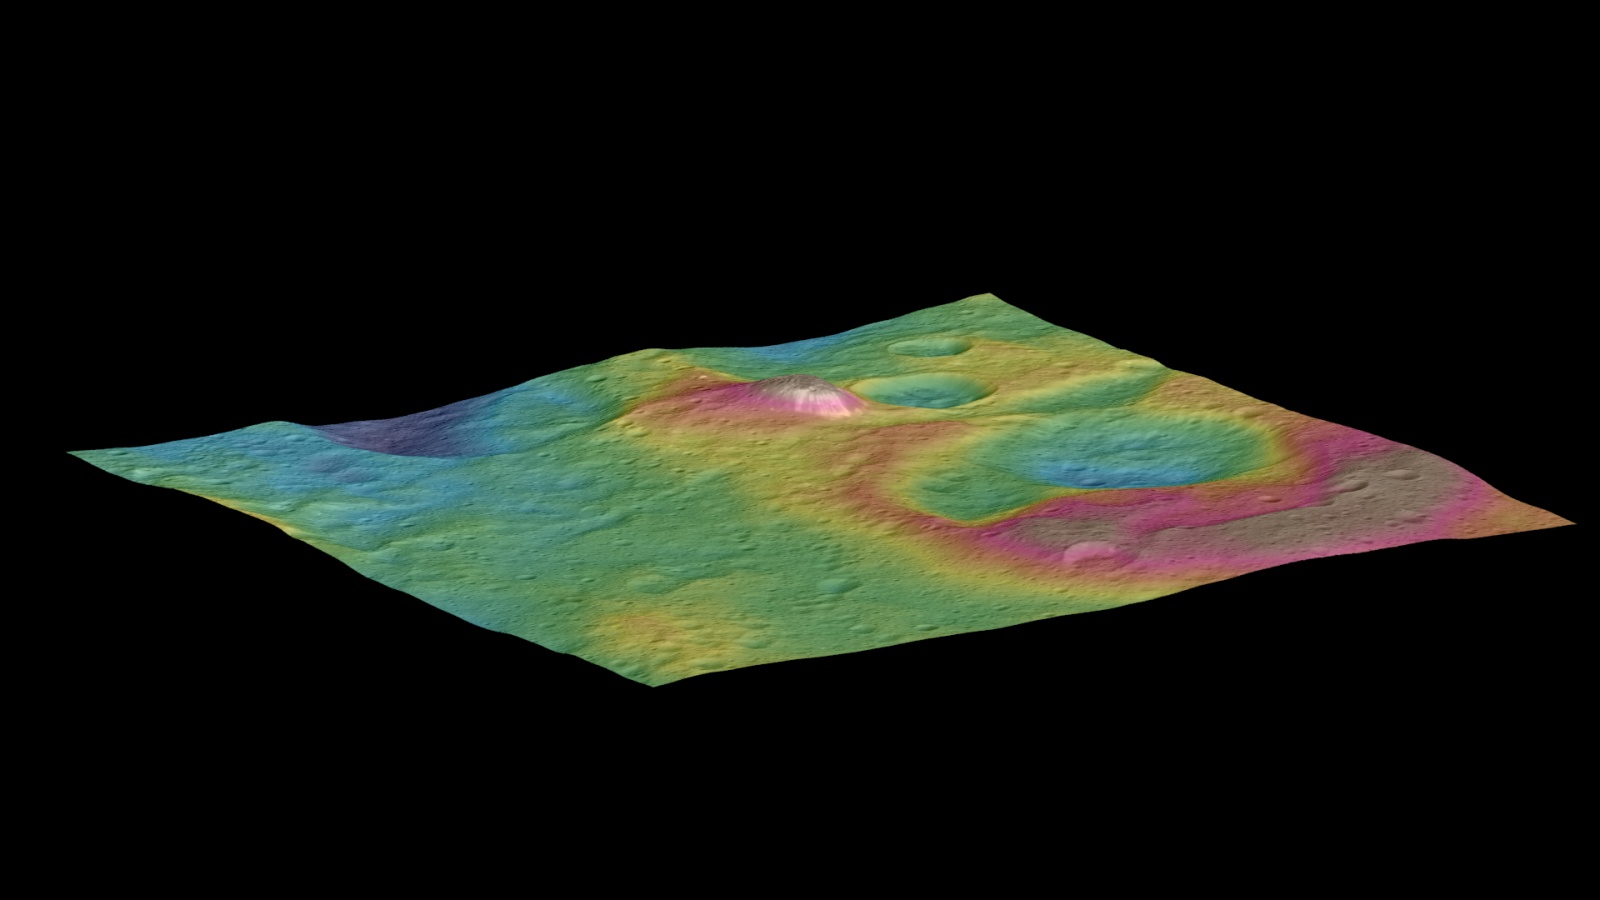 Церера продолжает удивлять ученых: неправильная геометрия кратеров и электромагнитные вспышки - 2